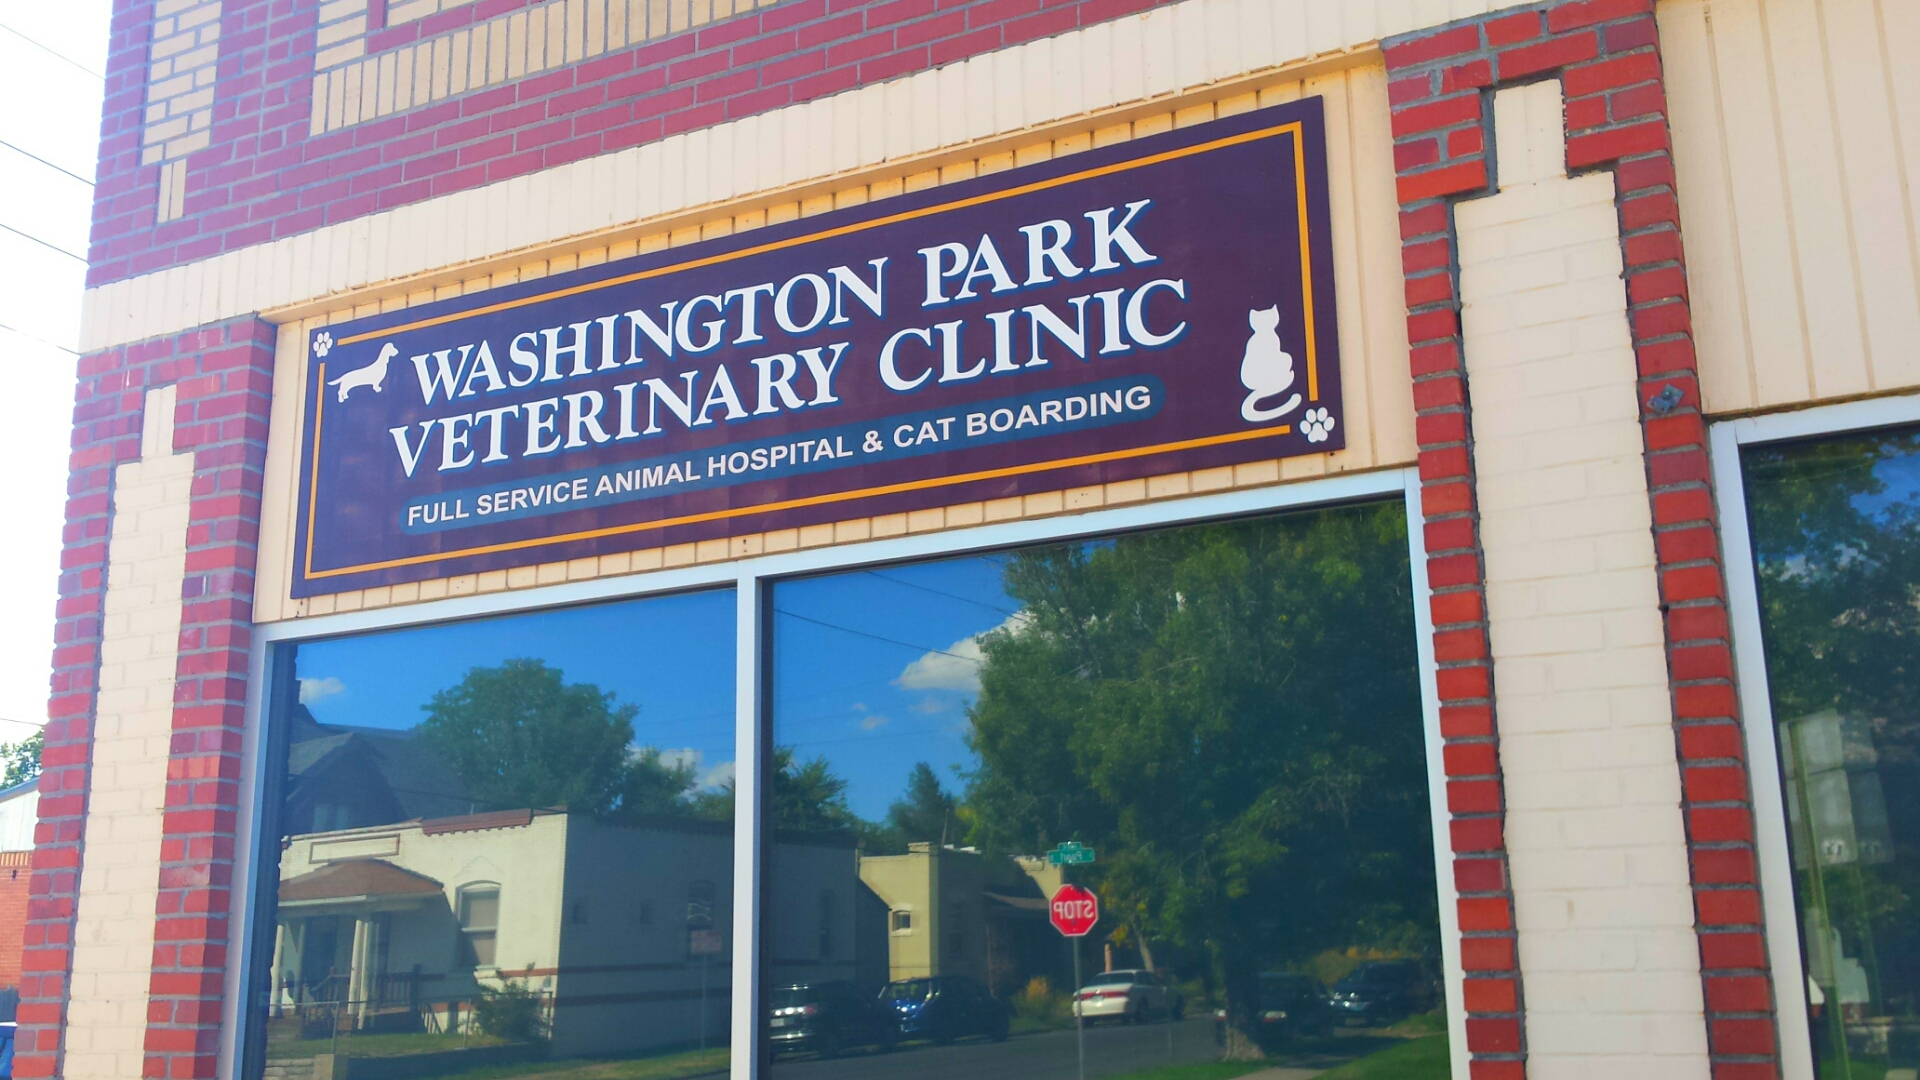 Washington Park Veterinary Clinic